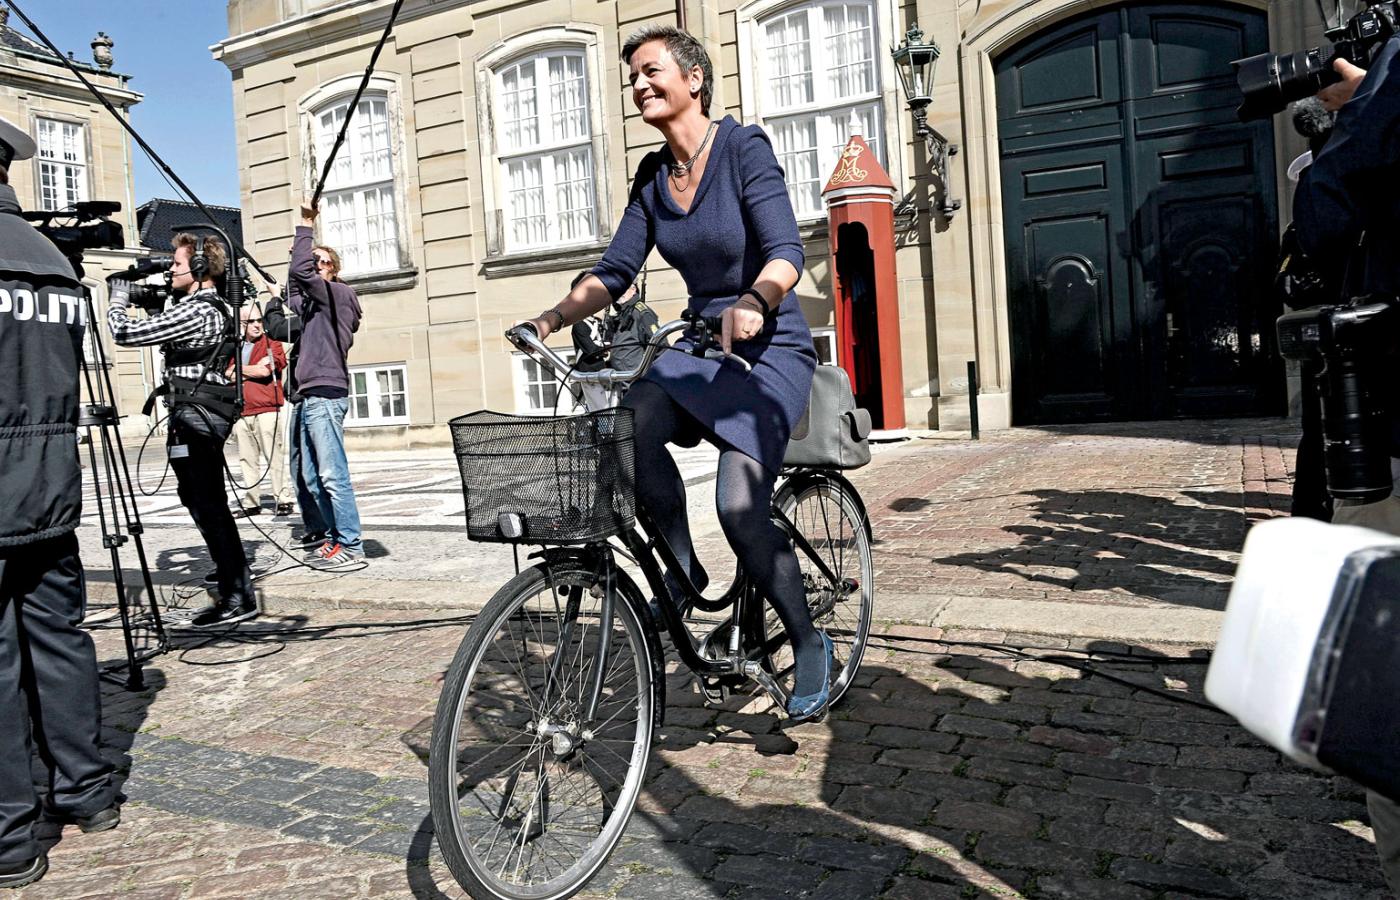 Margrethe Vestager stoi na straży wolności i uczciwej konkurencji w Unii.